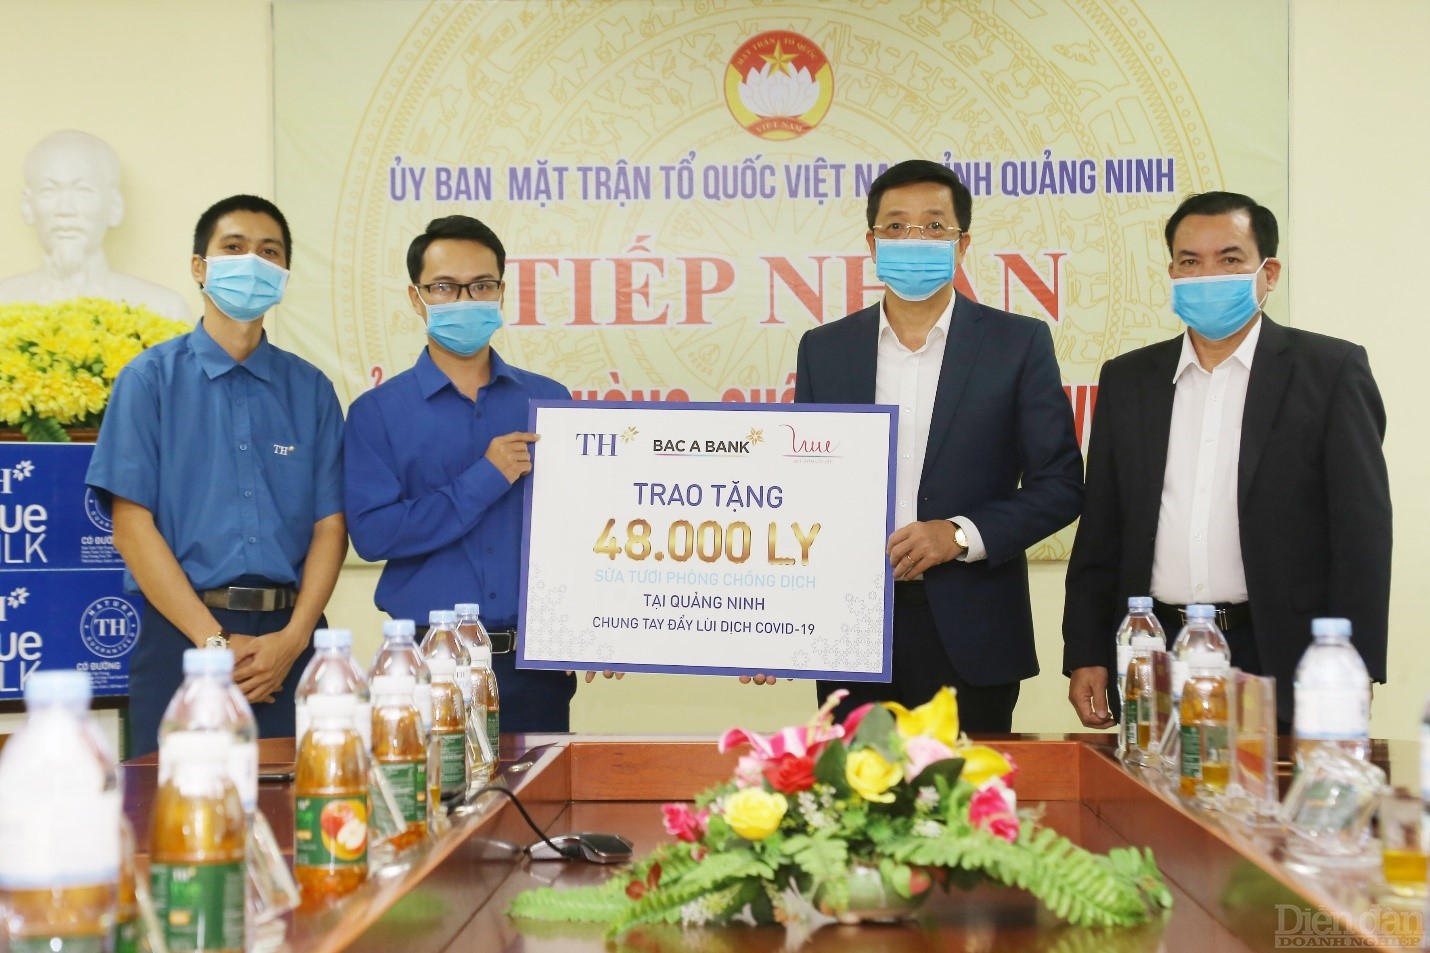 Đại diện lãnh đạo Tập đoàn TH, BAC A BANK trao tặng 48.000 ly sữa cho tỉnh Quảng Ninh.